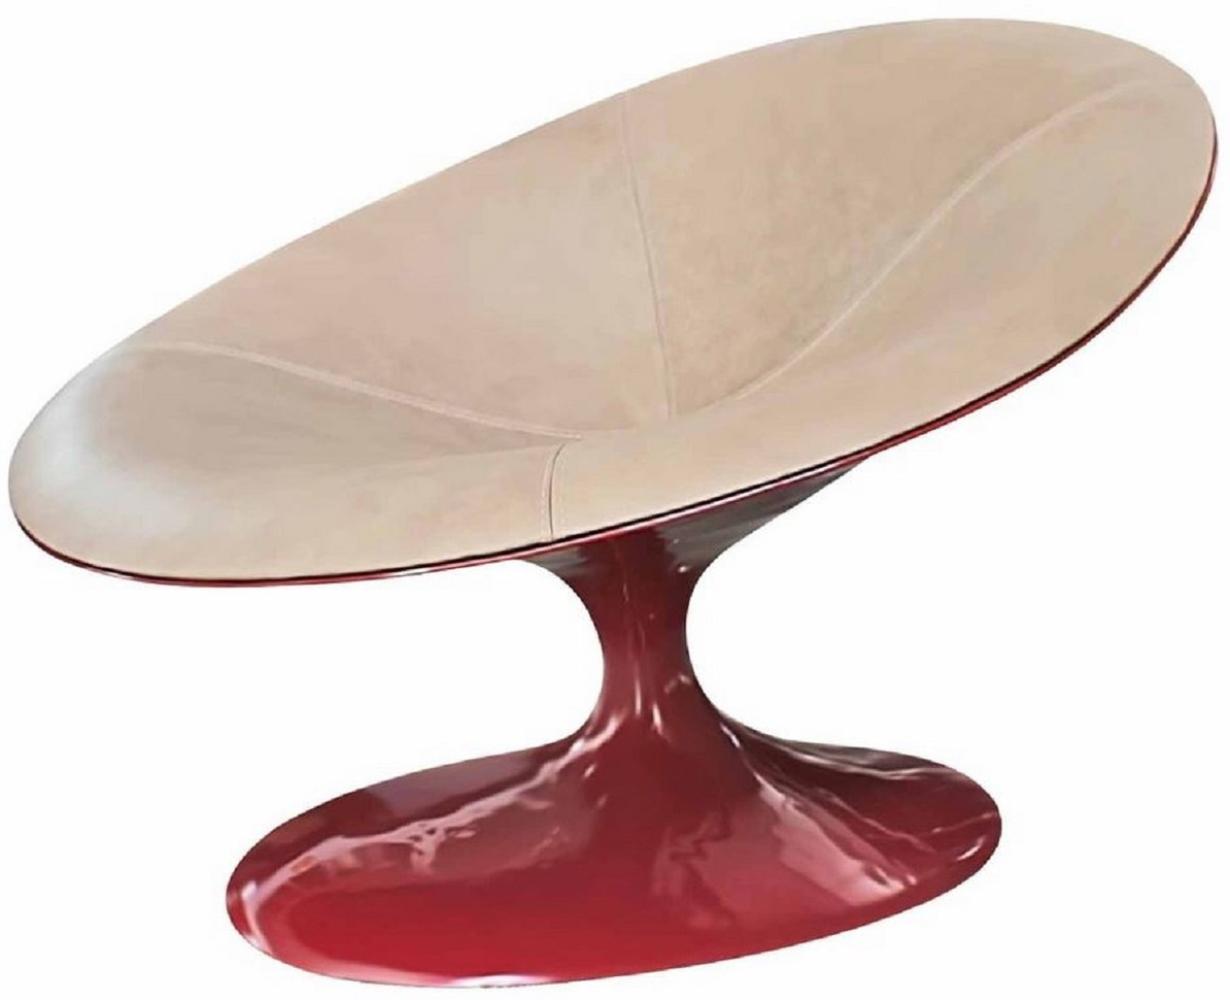 Casa Padrino Designer Sessel Hochglanz Rot / Beige 86 x 110 x H. 70 cm - Wohnzimmer Sessel - Hotel Sessel - Designer Möbel - Luxus Qualität Bild 1